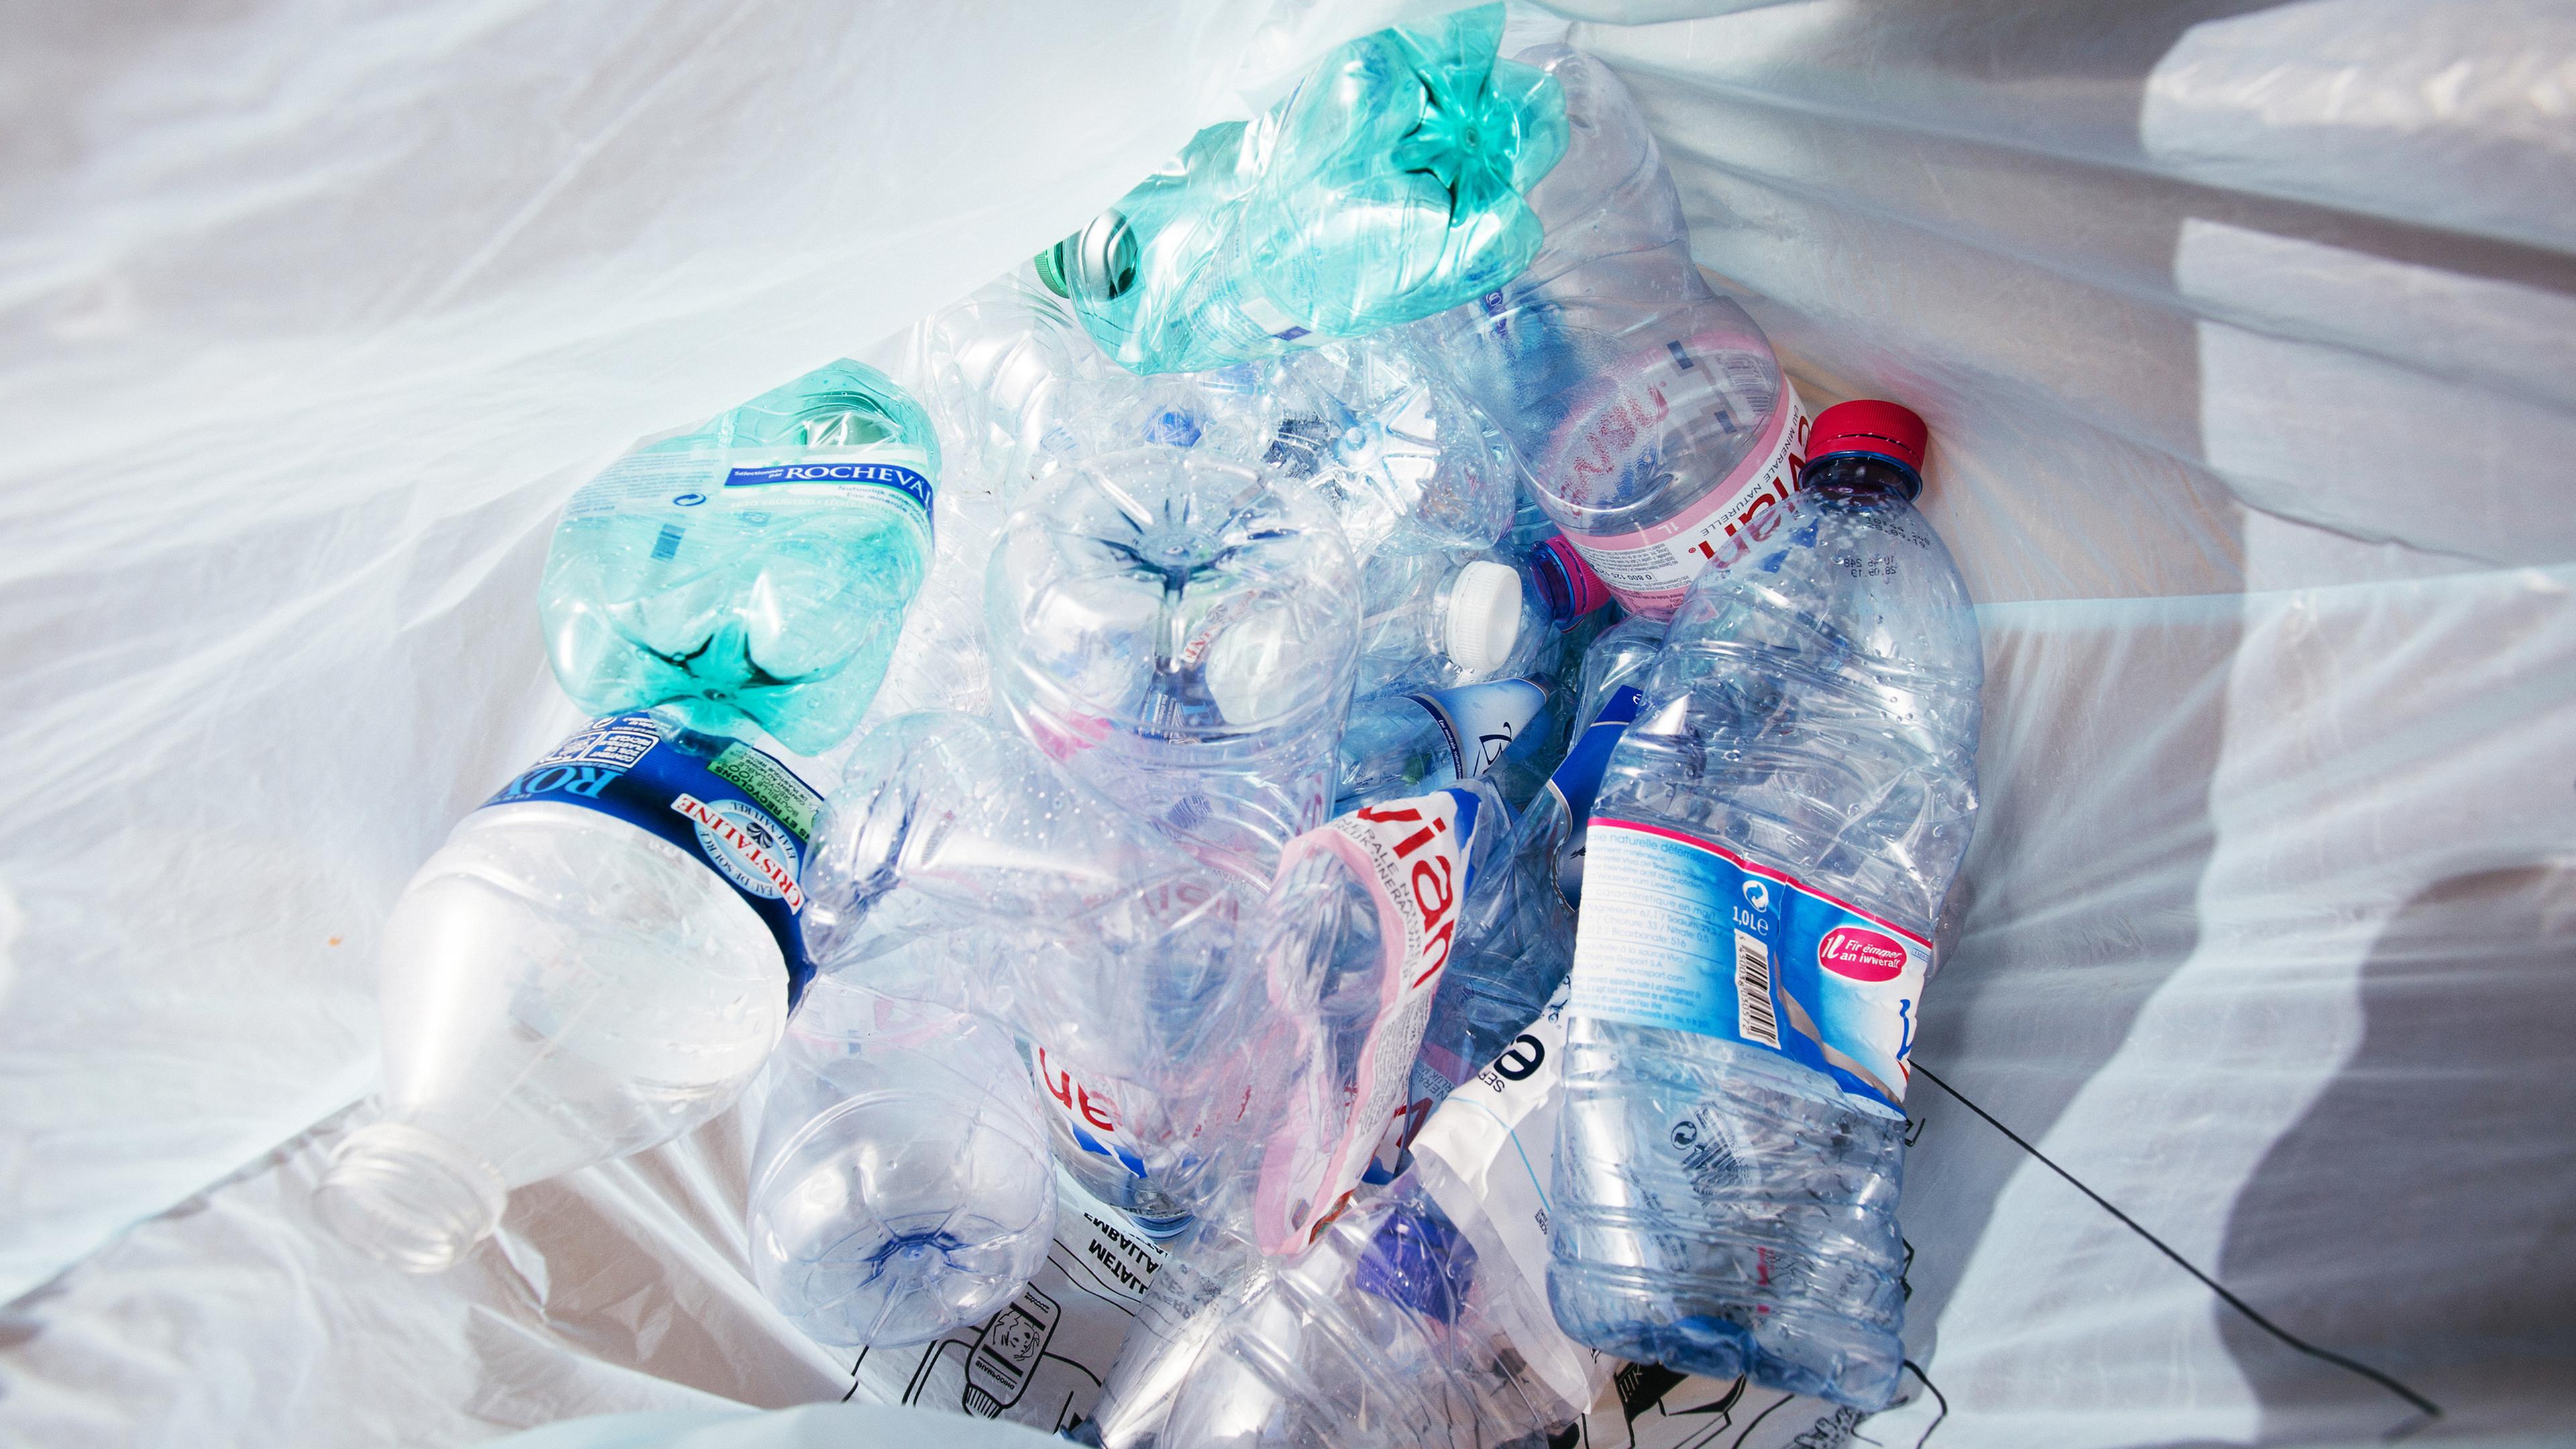 Carbios propose une nouvelle solution pour produire du plastique à partir d'emballages usagés.